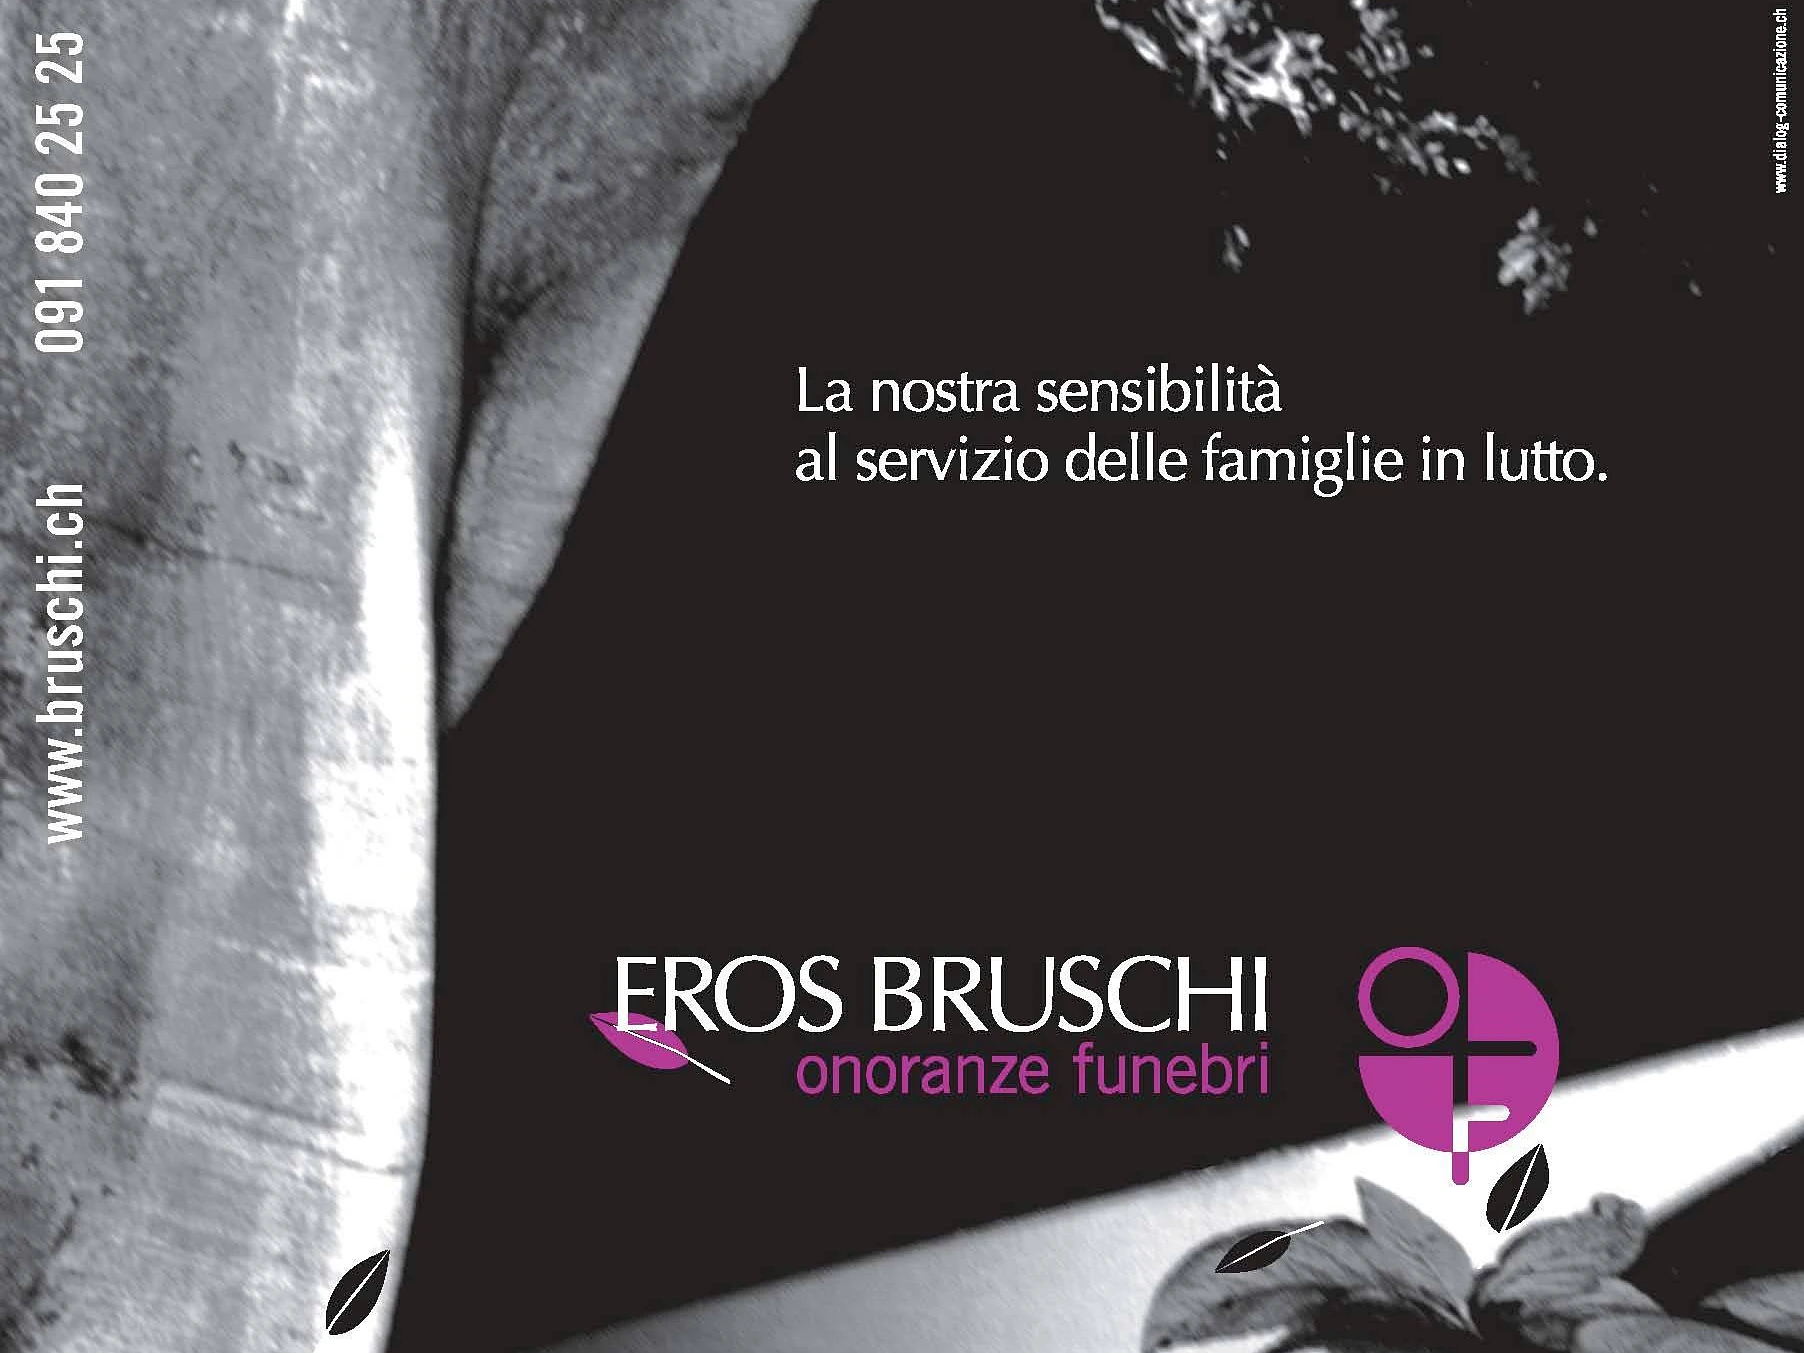 Bruschi Eros SA